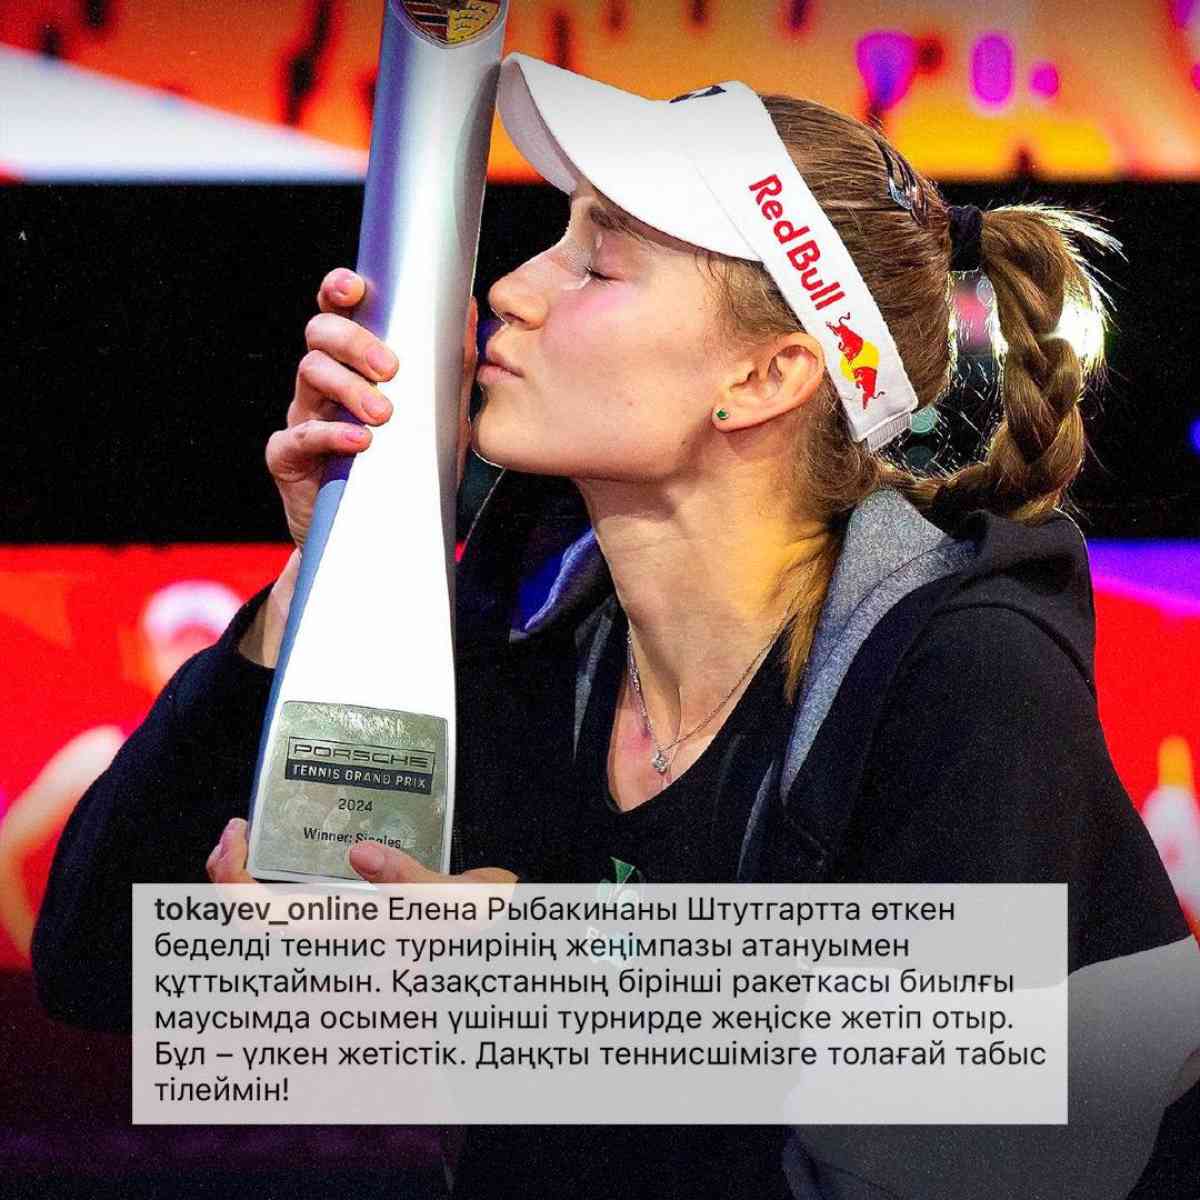 Касым-Жомарт Токаев поздравил Елену Рыбакину с победой на турнире WTA в Штутгарте